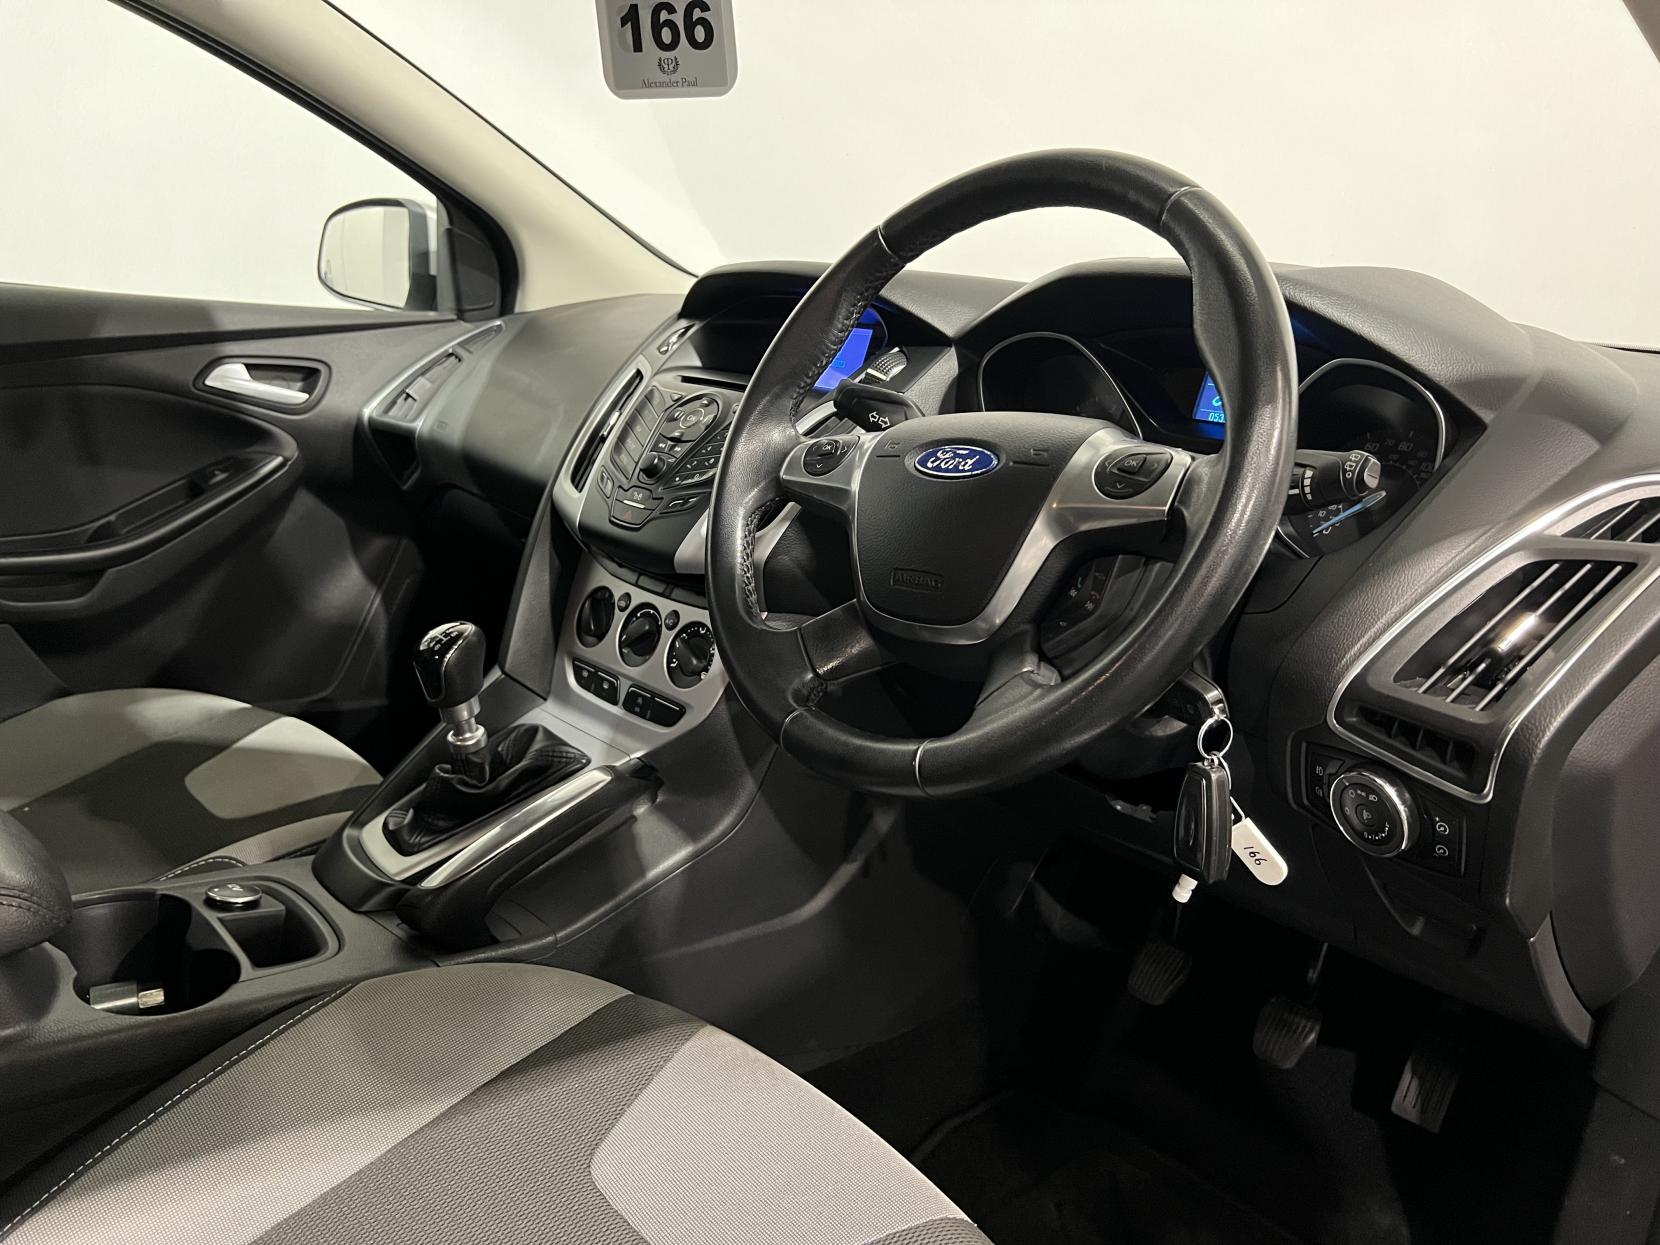 Ford Focus 1.6 TDCi Zetec Hatchback 5dr Diesel Manual Euro 5 (s/s) (115 ps)